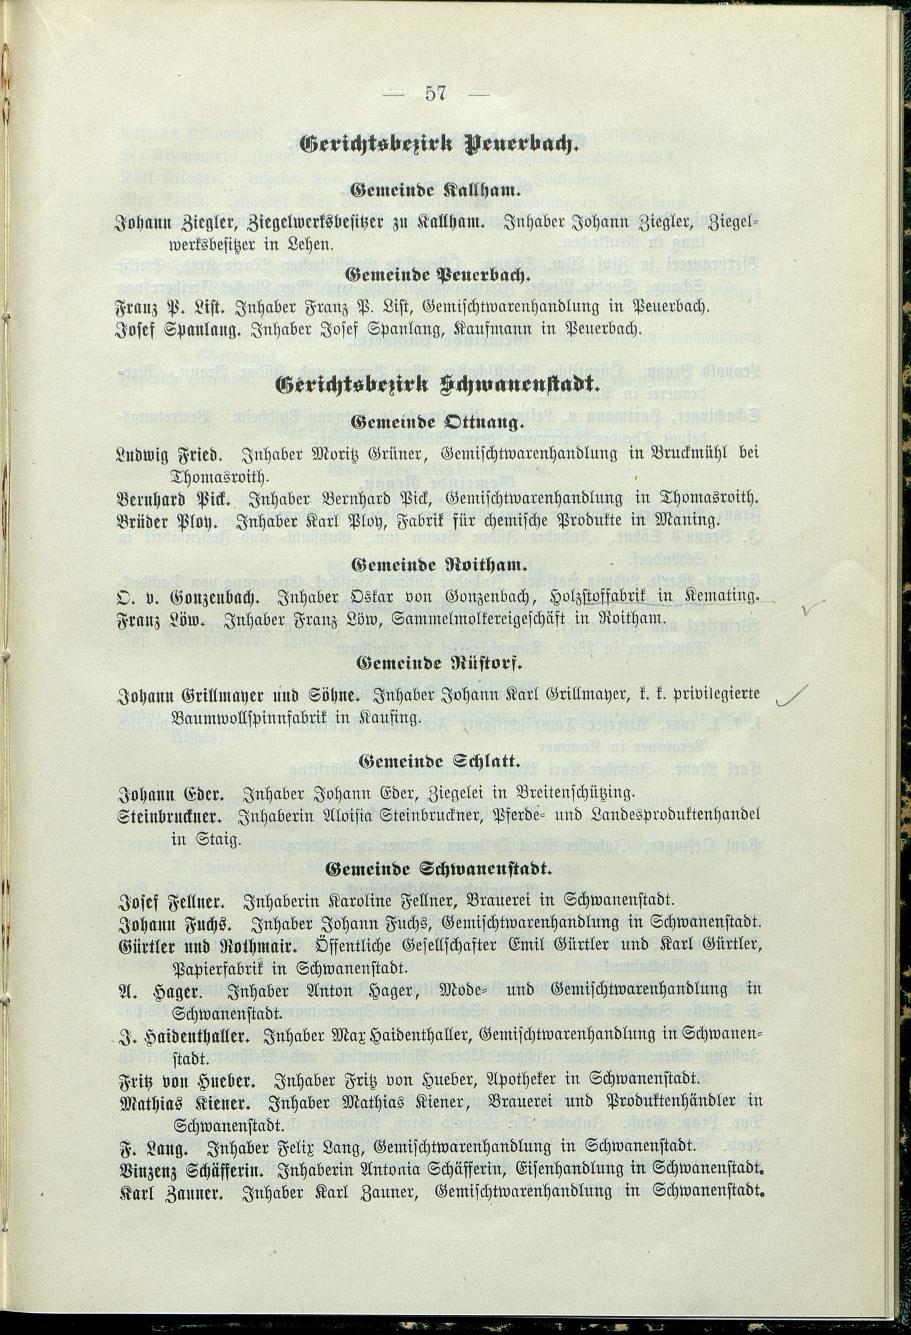 Verzeichnis der protokollierten Firmen und Genossenschaften in Oberösterreich 1908 - Page 61